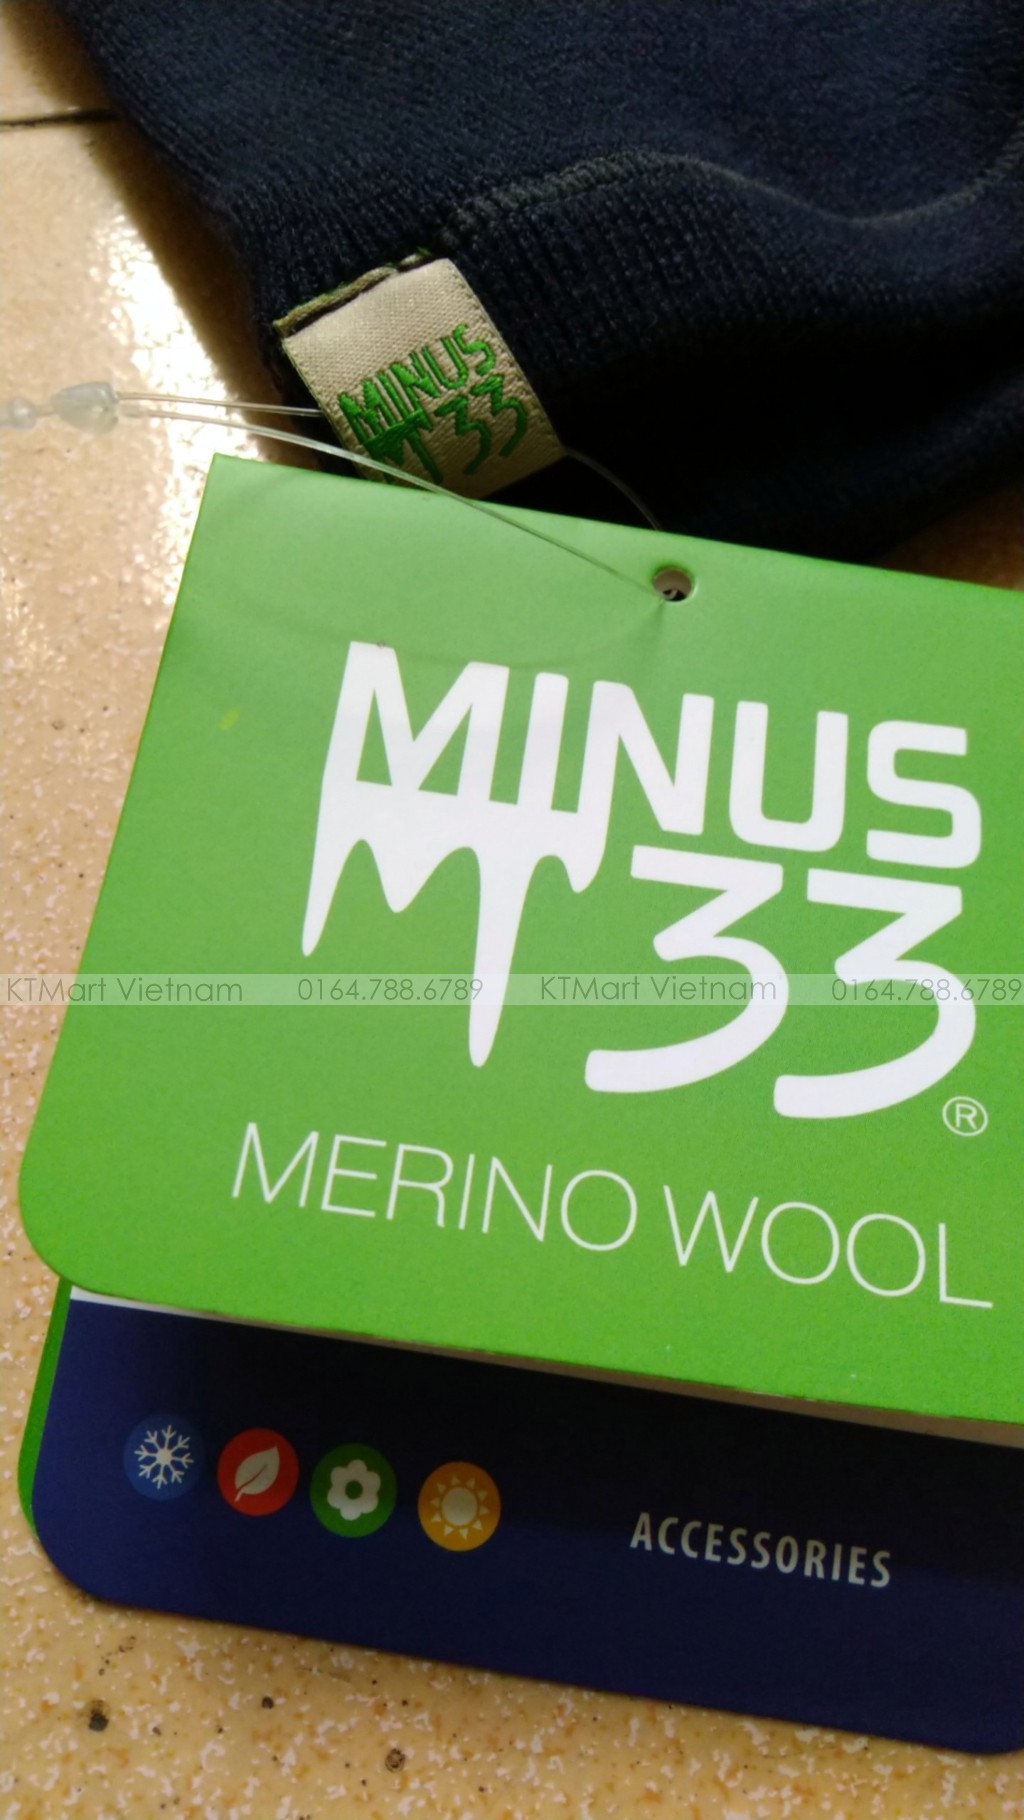 Minus33 Merino Wool Midweight Neck Gaiter Minus33 ktmart.vn 12